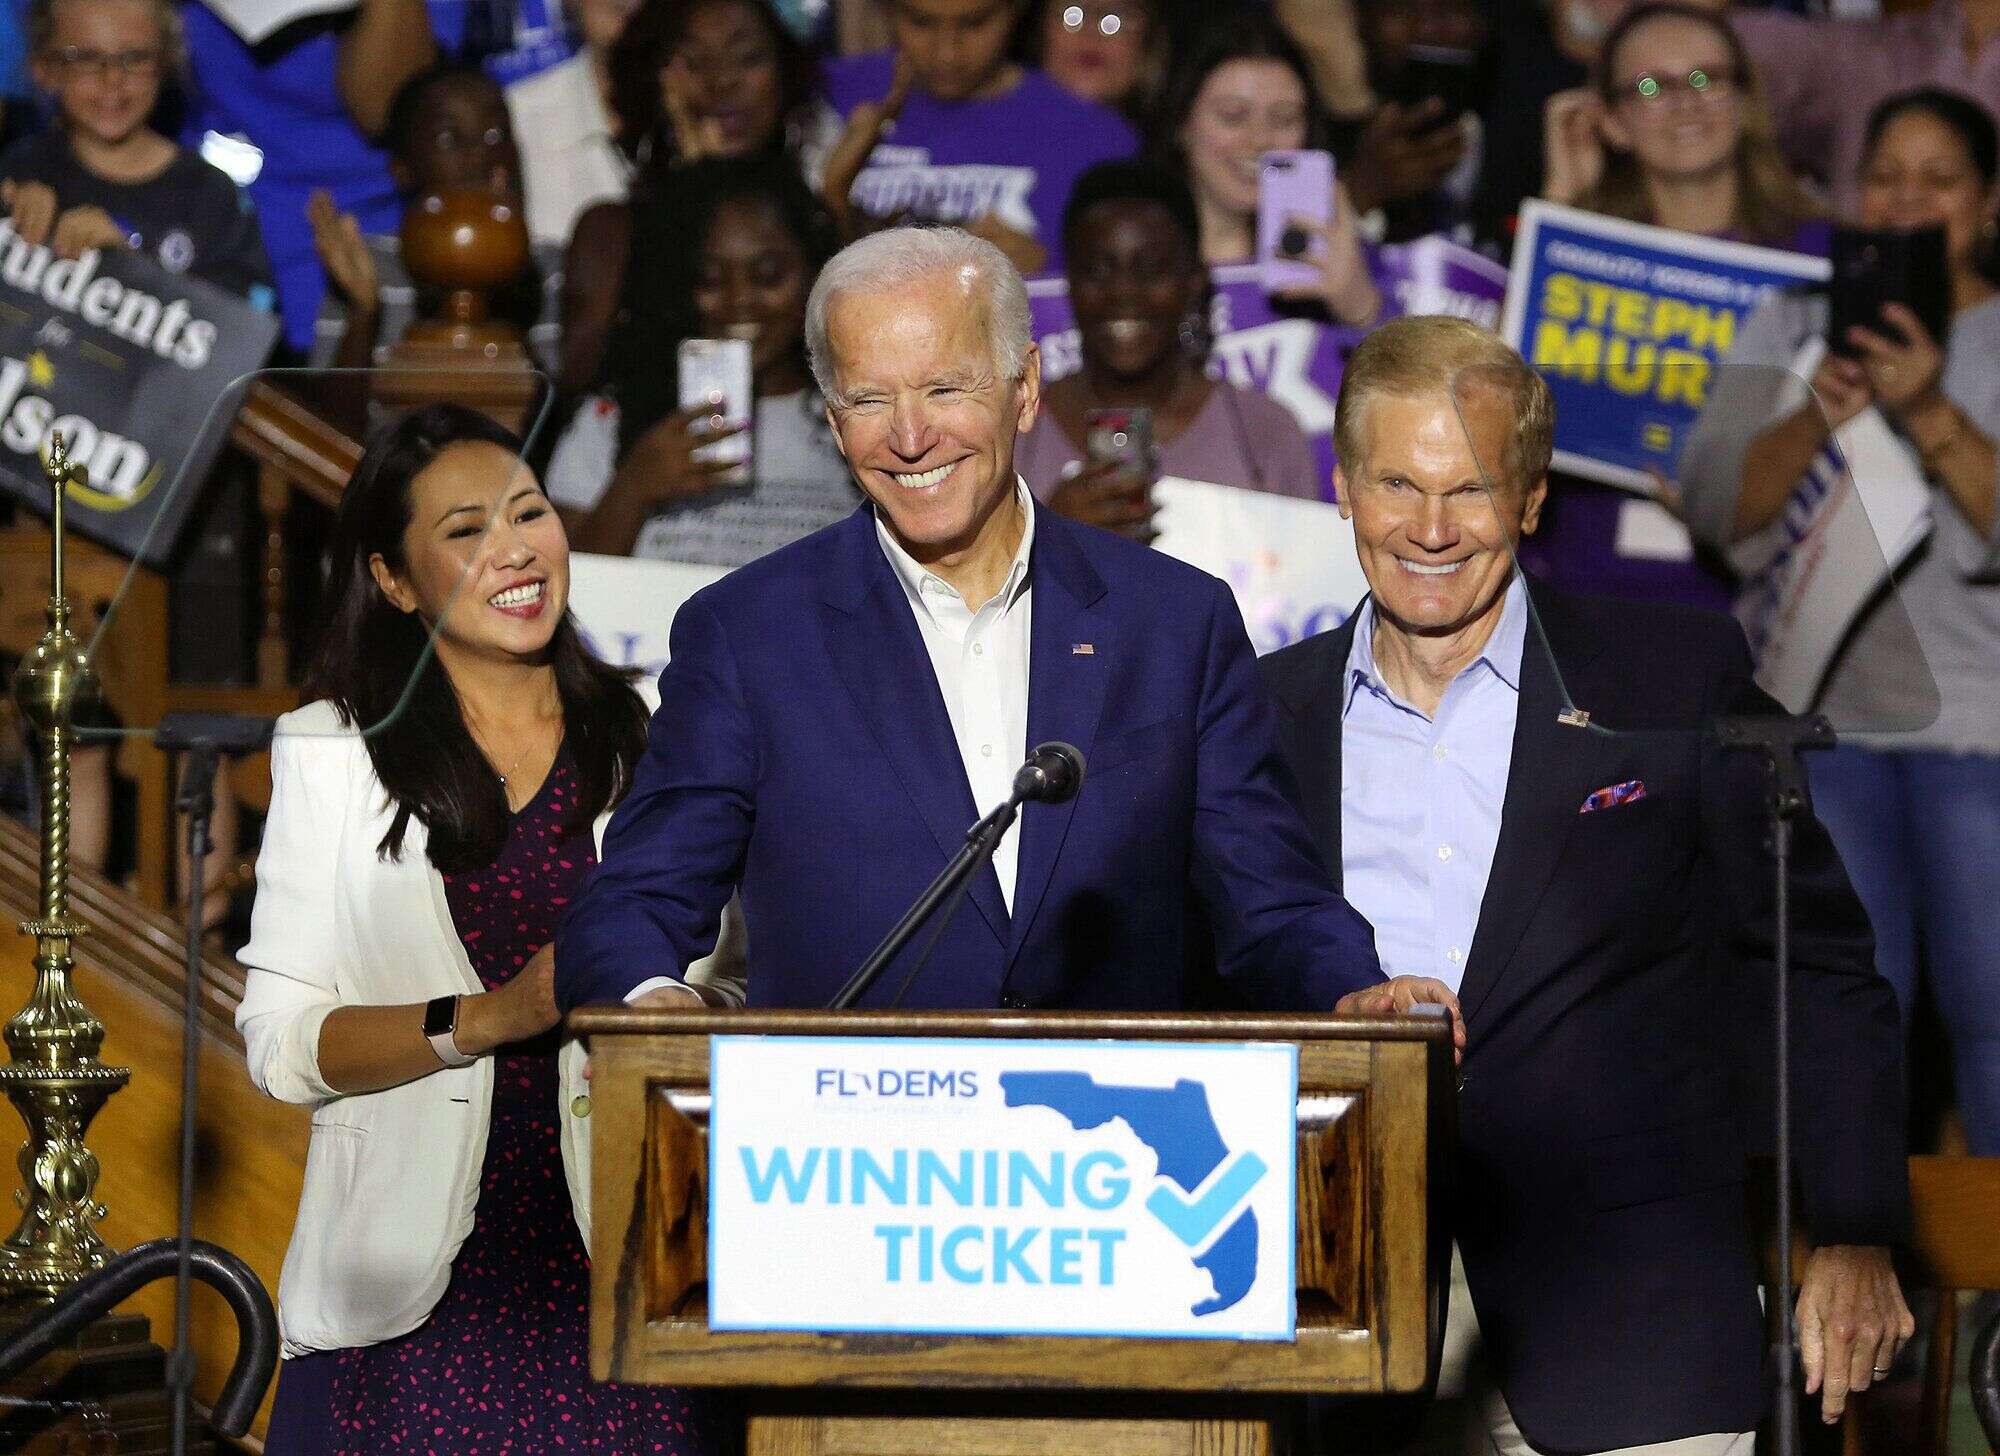 La stratégie de Biden tire les leçons de la défaite des Démocrates en Floride en 2018, lorsque le sénateur Ben Nelson a perdu son siège face aux Républicains qui ont su conquérir les électeurs portoricains et cubains.